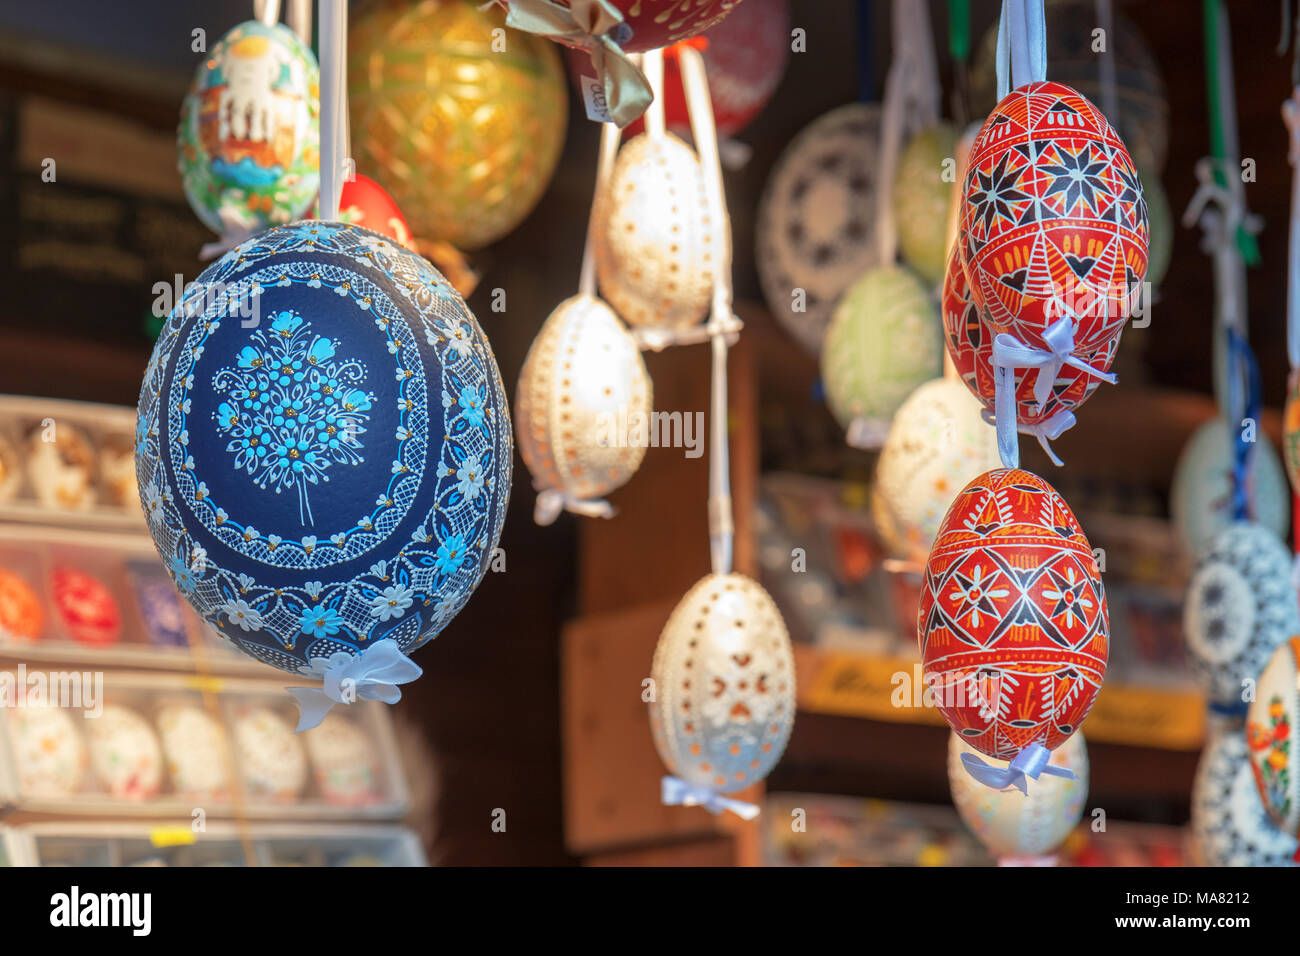 Large choix d'œufs de Pâques, souvenirs traditionnels dans le kiosque du marché de la rue pendant la célébration de Pâques en Europe centrale. Banque D'Images